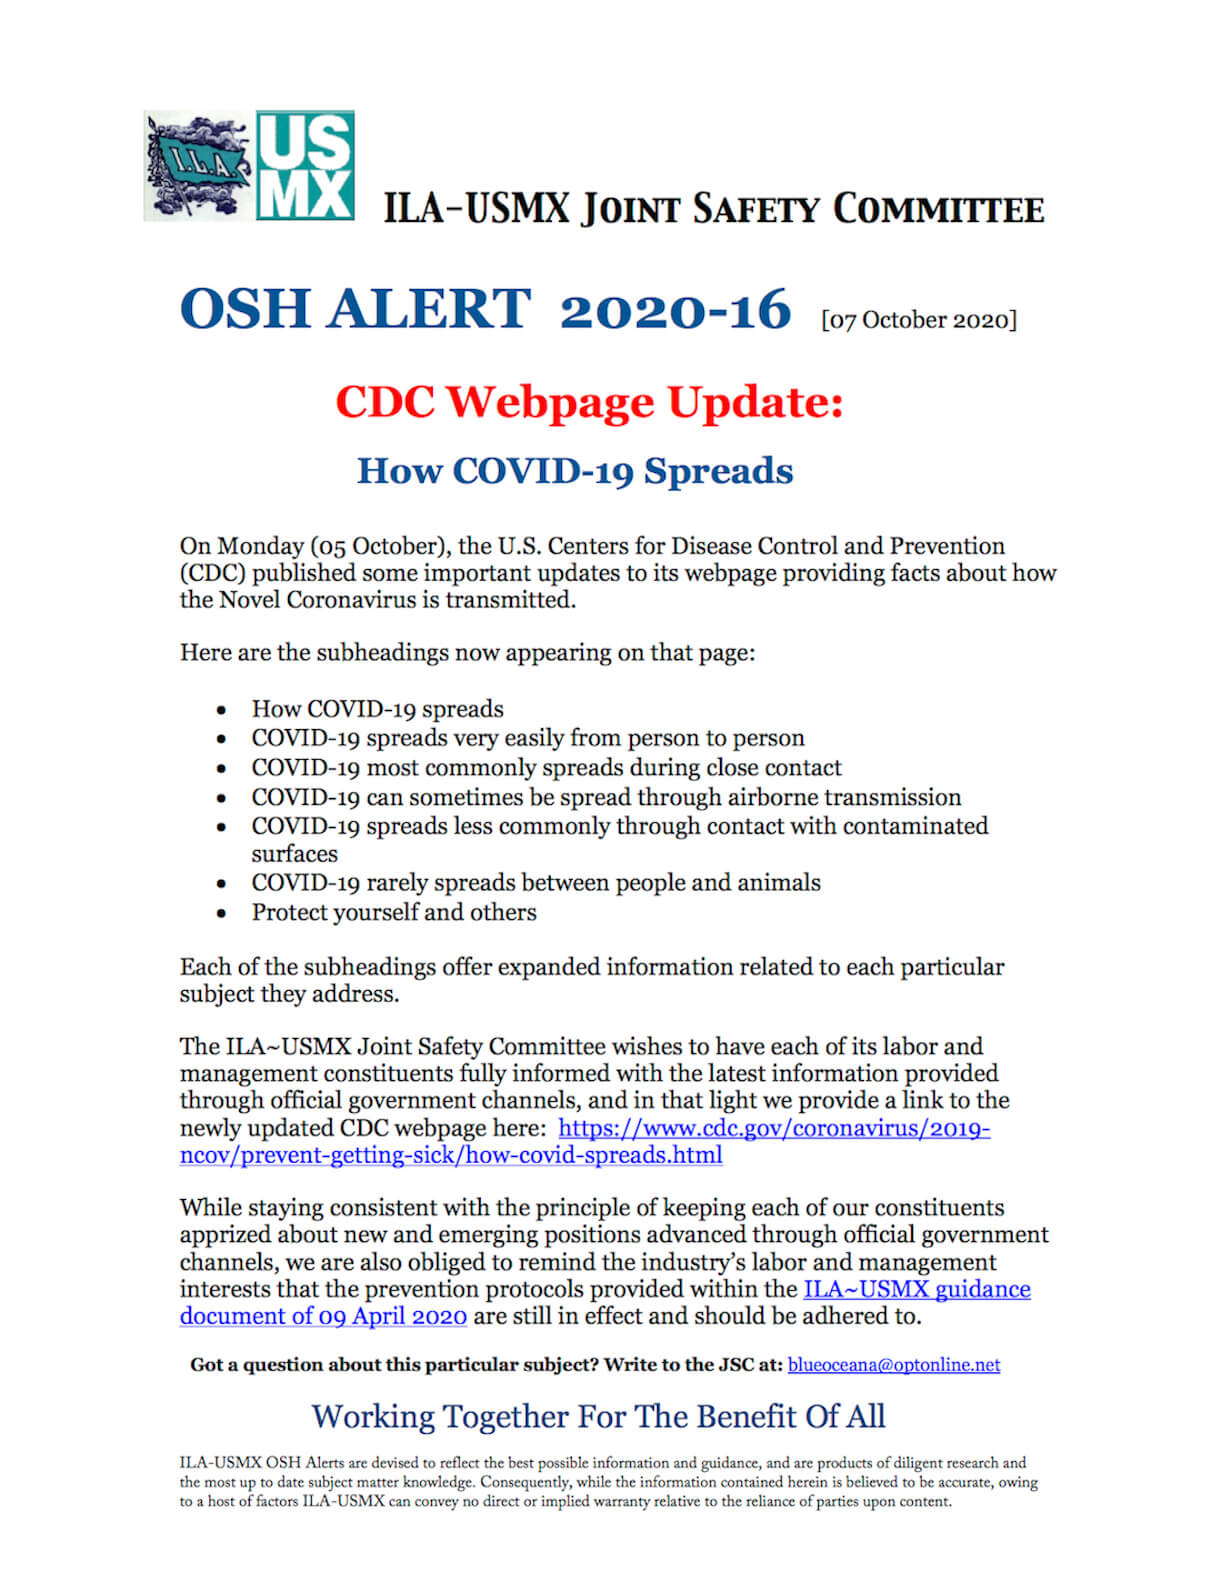 OSH Alert 2020-16 Covid Spread